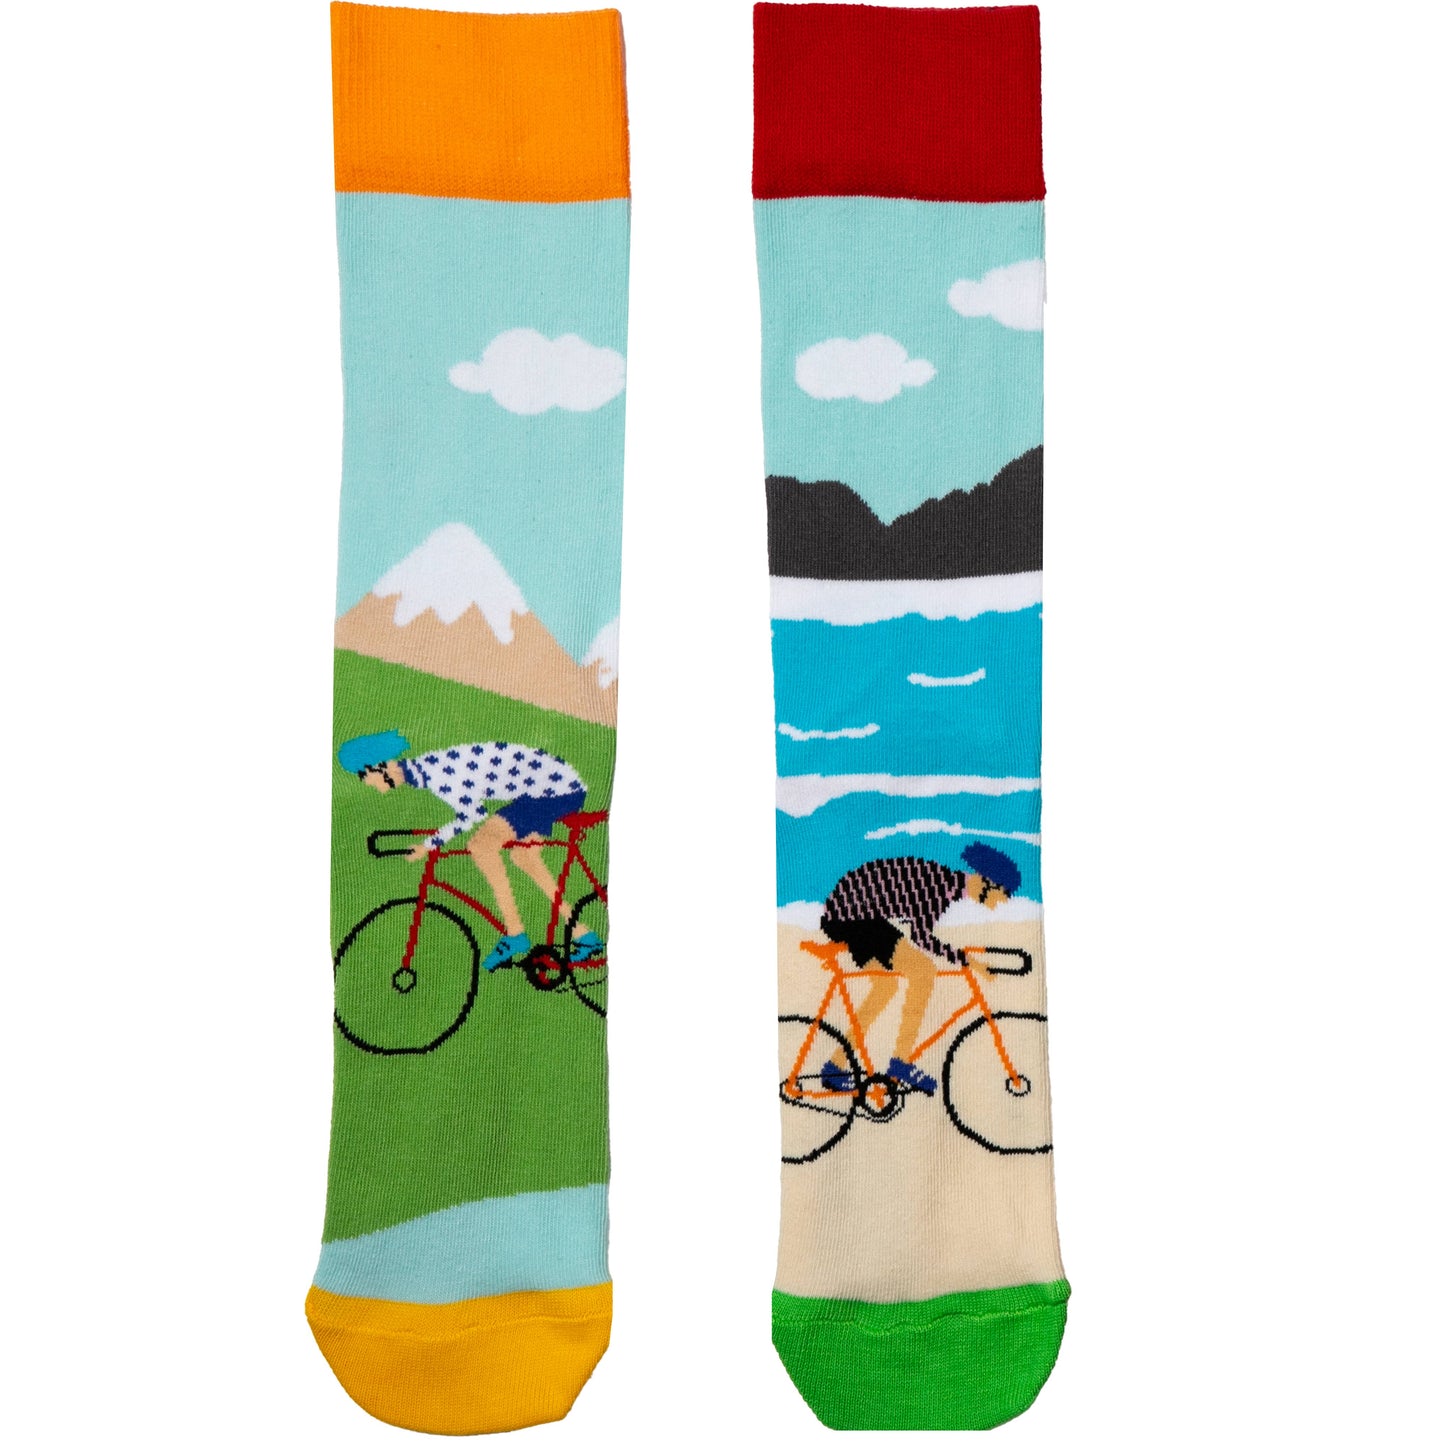 Cycling Odd Socks (6 x Odd Socks)